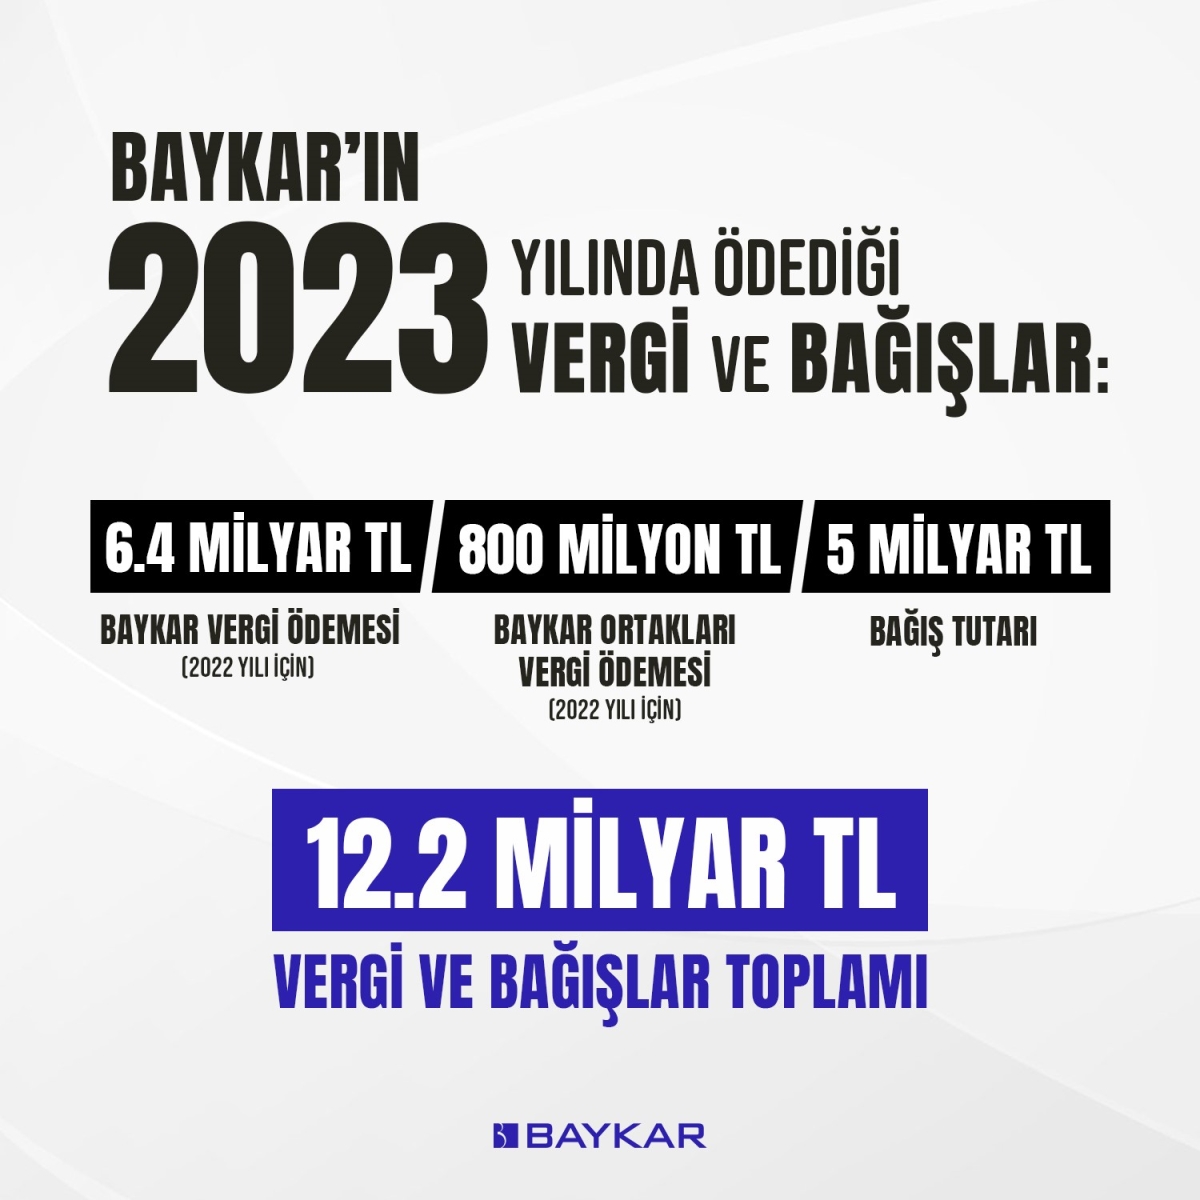 Baykar ödediği vergiler ve yaptığı bağışlarla Türkiye’ye 12.2 milyar TL’lik doğrudan katkı sağladı
